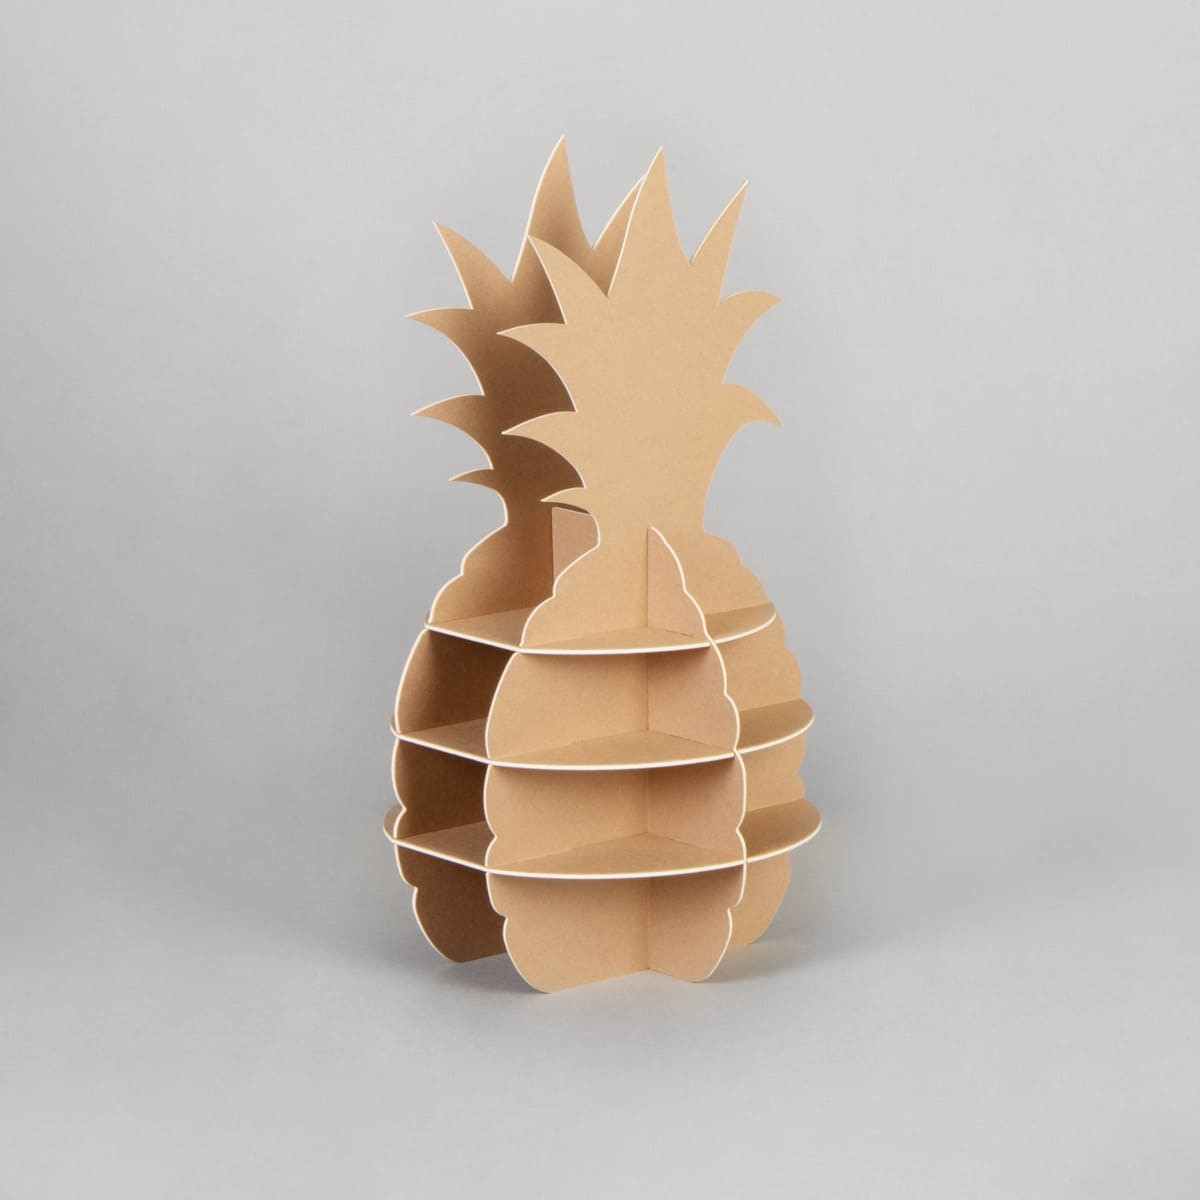 Floor display pineapple made of KROMA Kraft